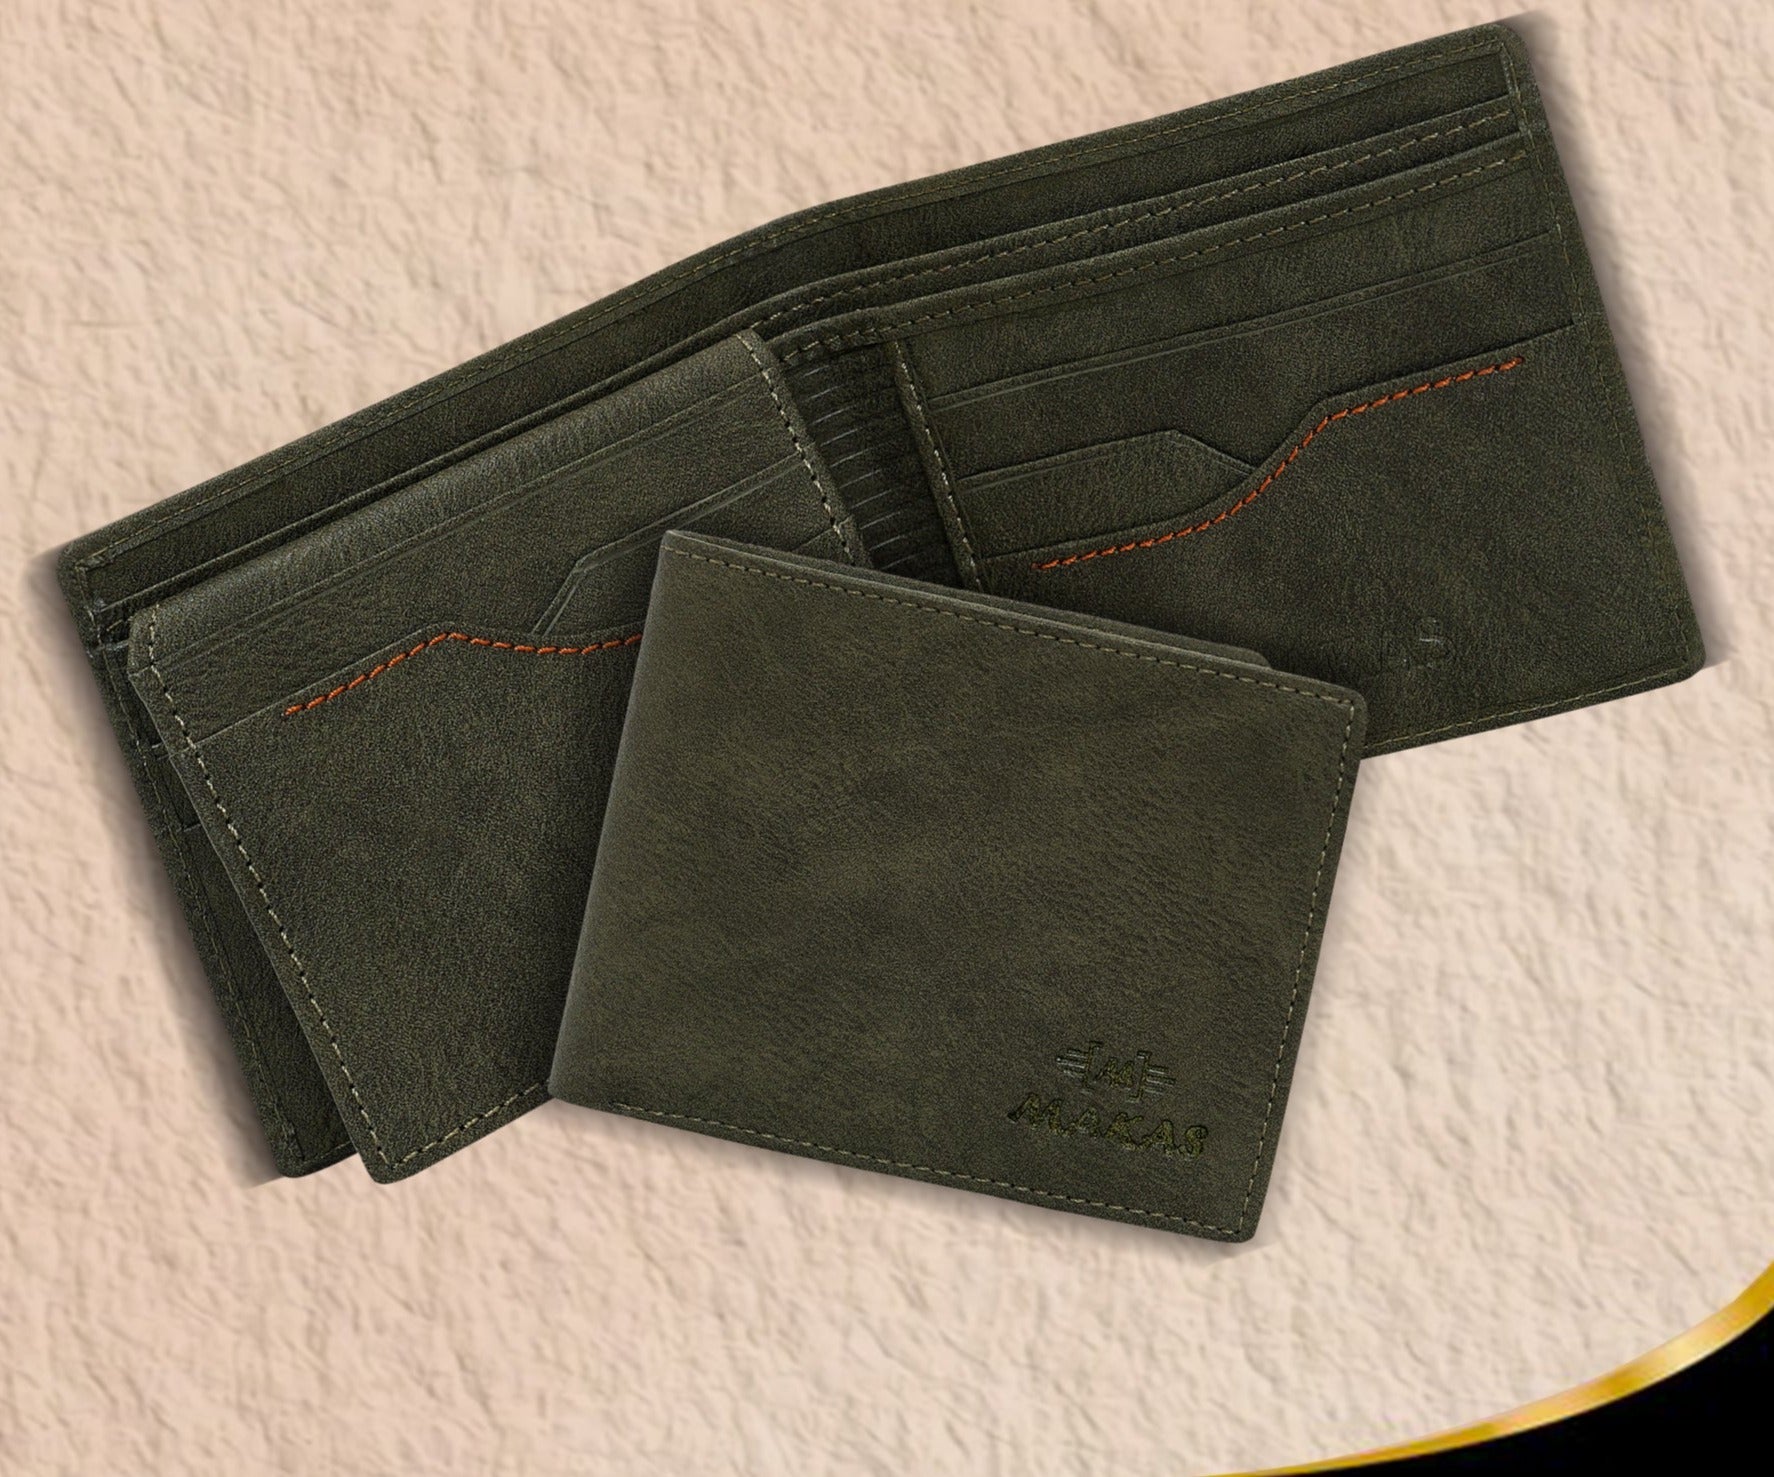 Makas Men's Card Holder Wallet - open View - Colour Green